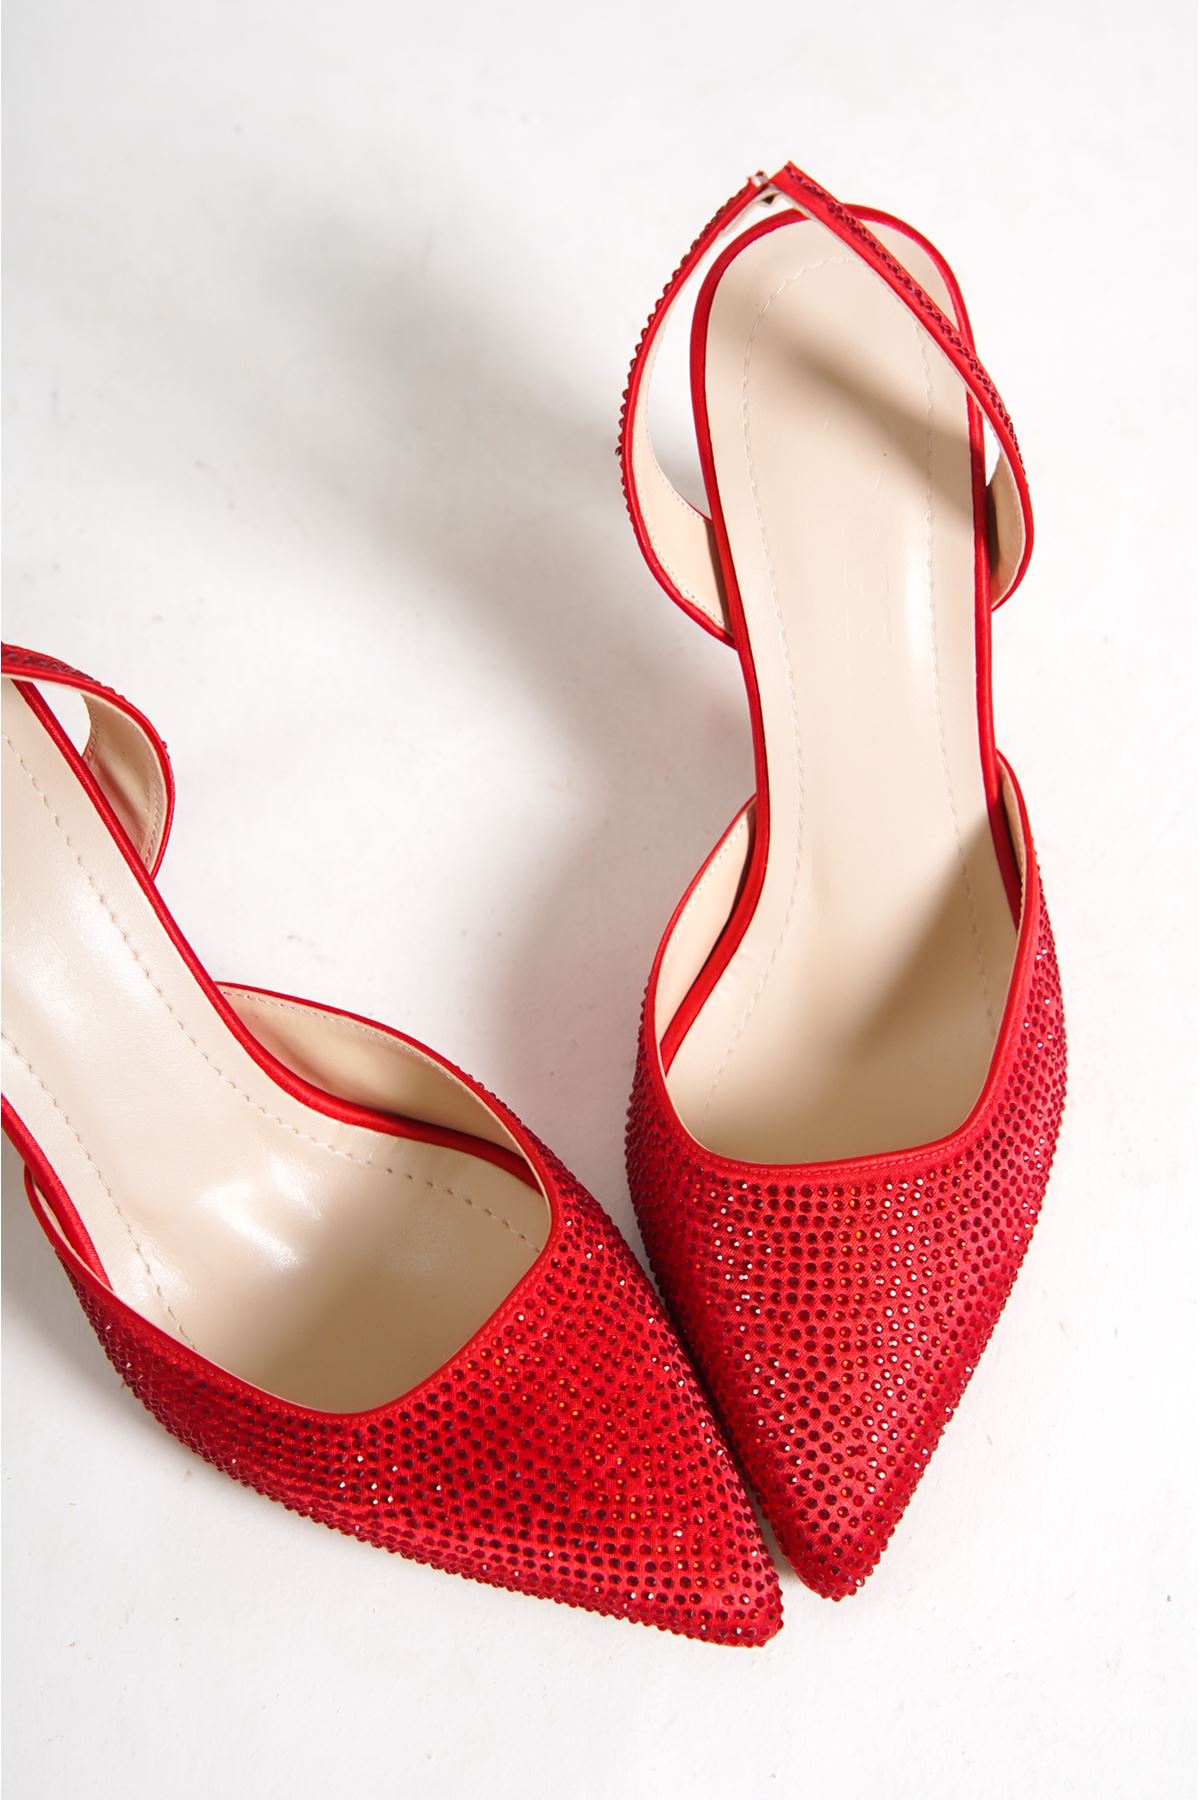 Derek Kırmızı Taşlı Topuklu Kadın Ayakkabı